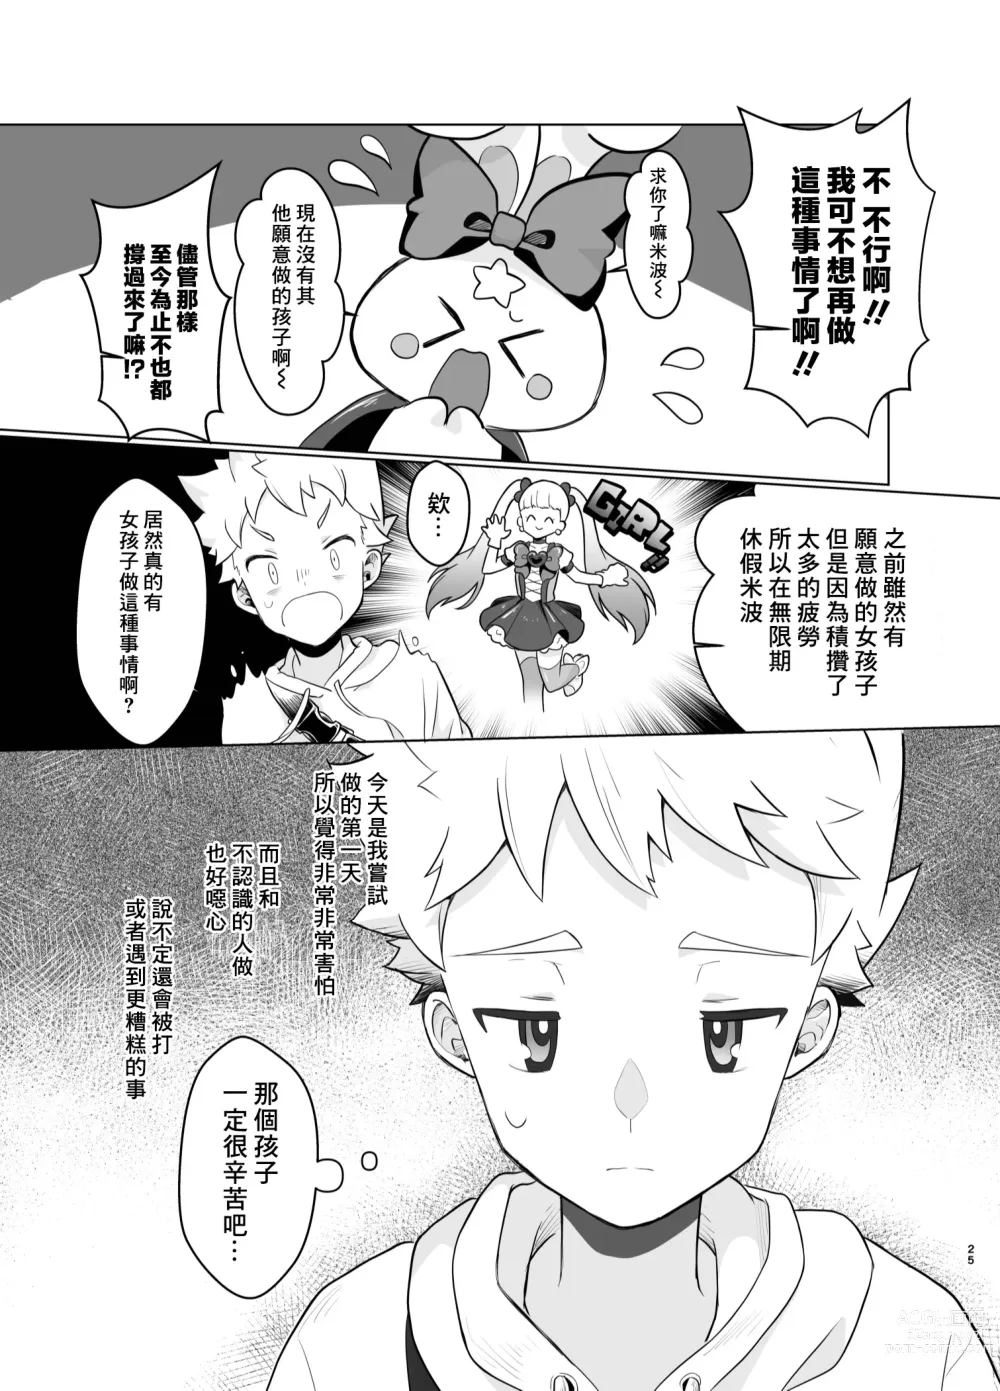 Page 24 of doujinshi Mahou Shoujo Mirakuru Mirachan丨魔法少女奇蹟米拉醬 (decensored)